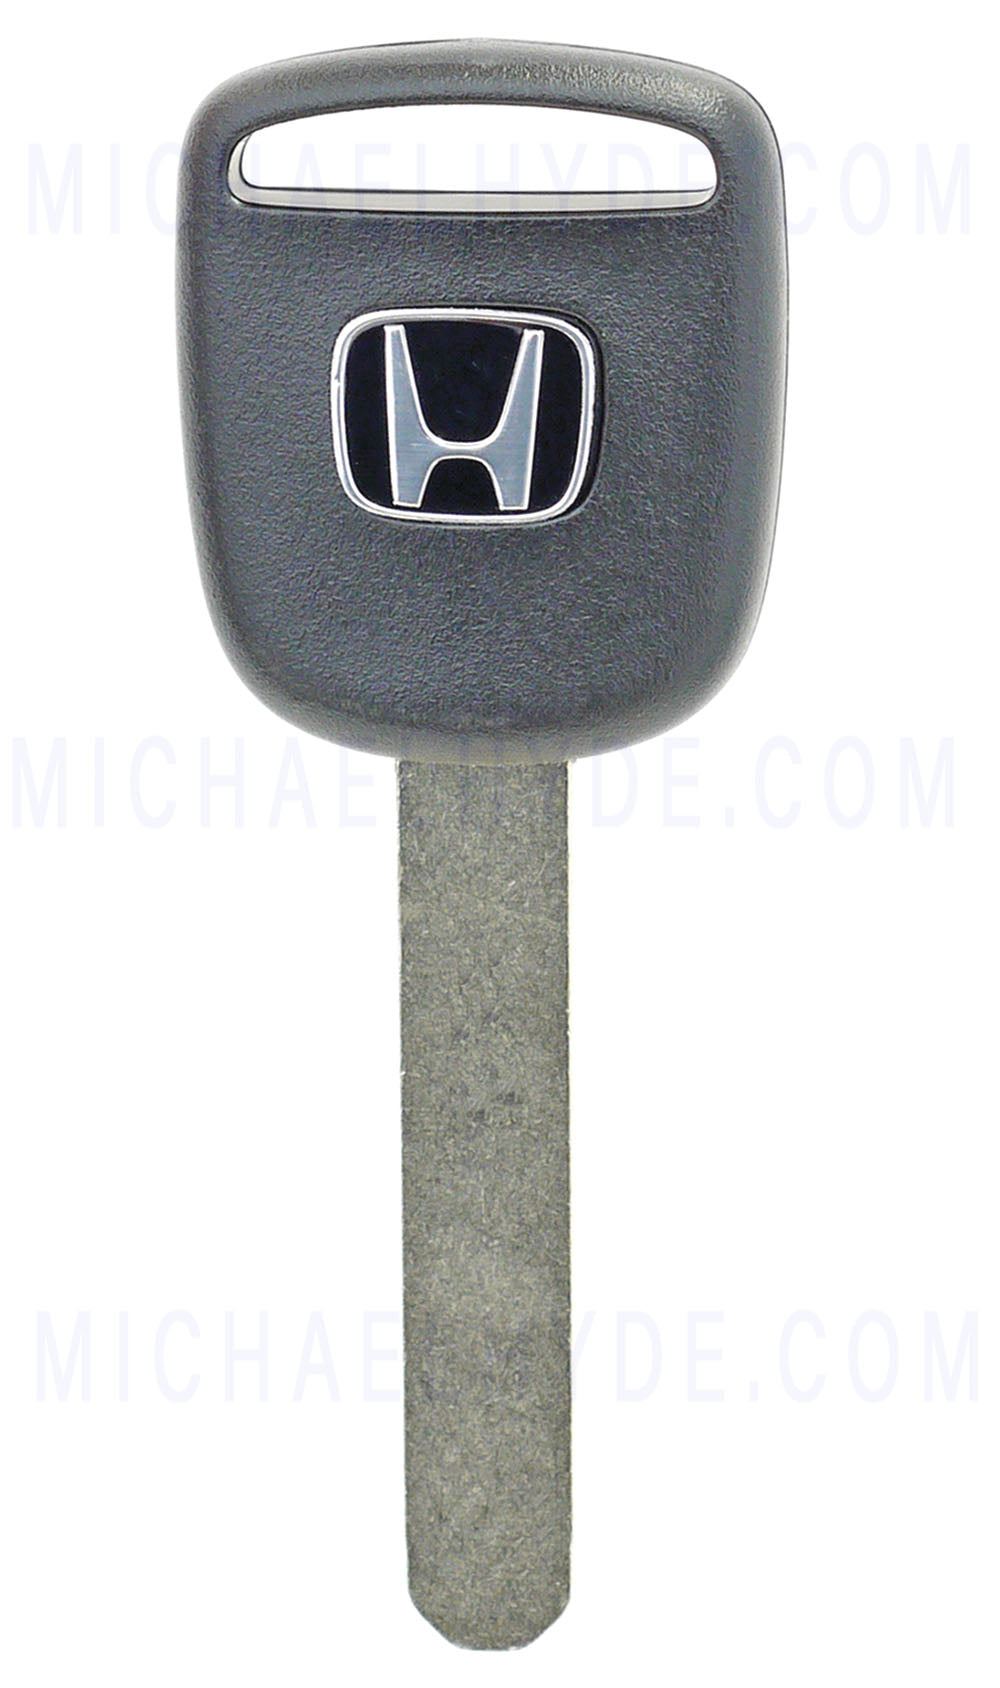 2003-07 Honda Encrypted Factory Key (Factory Original) 35118-SDA-A01